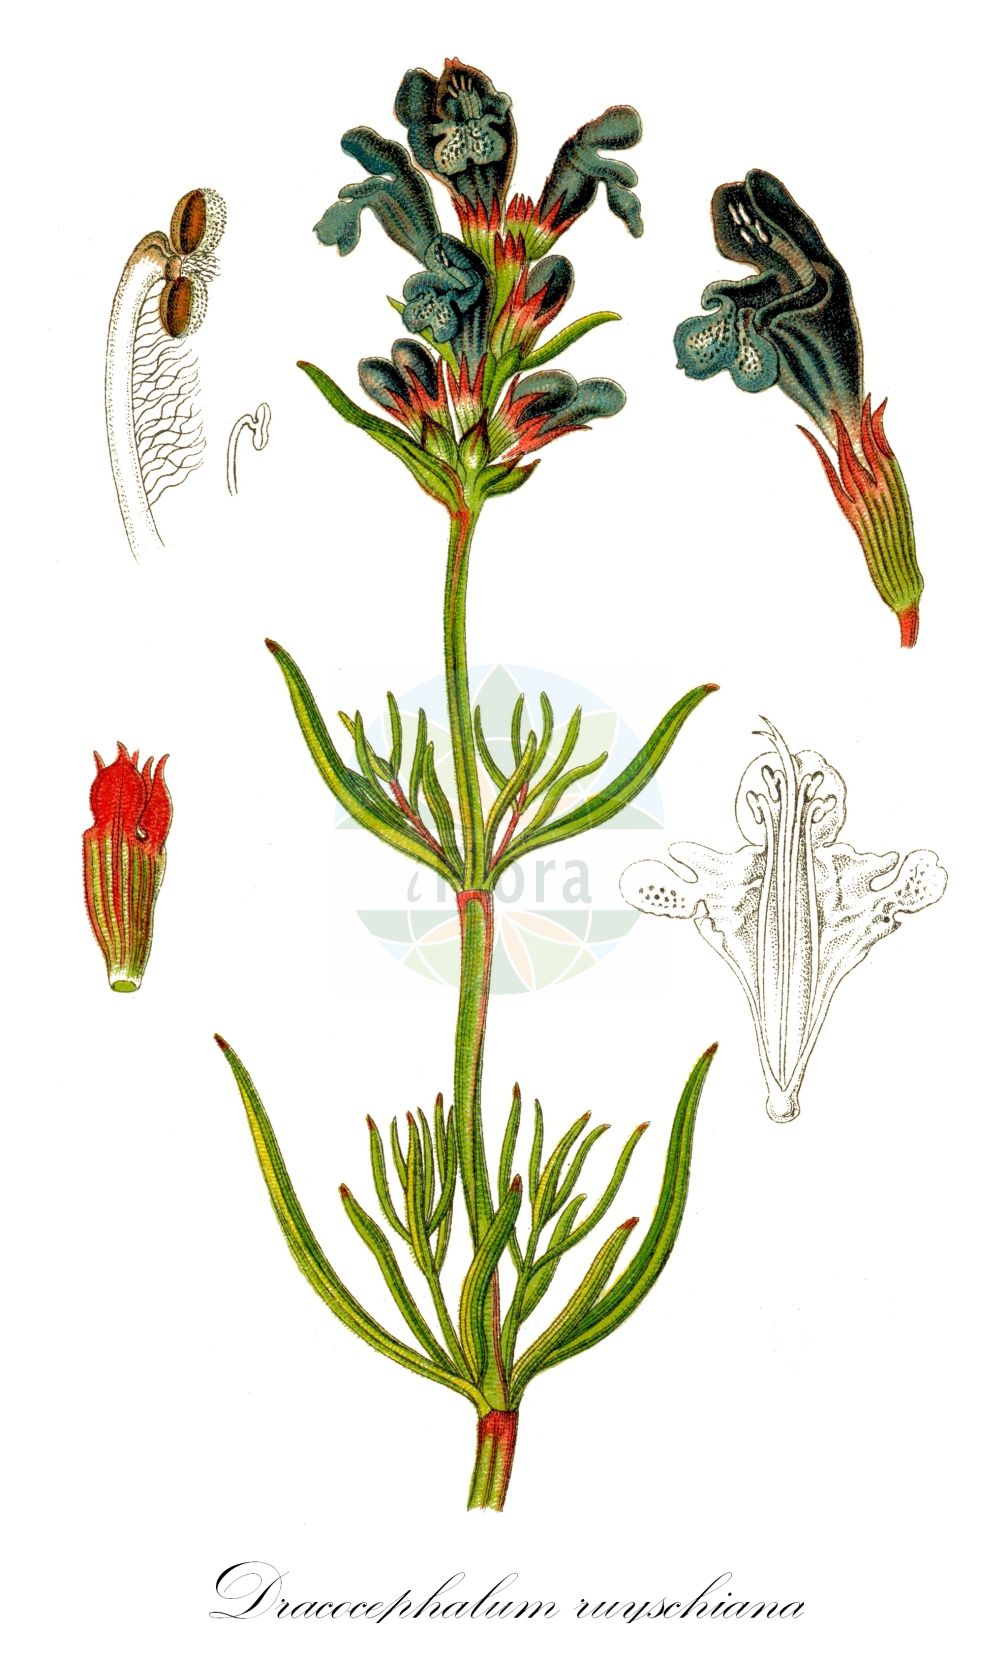 Historische Abbildung von Dracocephalum ruyschiana (Nordischer Drachenkopf - Northern Dragonhead). Das Bild zeigt Blatt, Bluete, Frucht und Same. ---- Historical Drawing of Dracocephalum ruyschiana (Nordischer Drachenkopf - Northern Dragonhead). The image is showing leaf, flower, fruit and seed.(Dracocephalum ruyschiana,Nordischer Drachenkopf,Northern Dragonhead,Dracocephalum alpinum,Dracocephalum angustifolium,Dracocephalum hyssopifolium,Dracocephalum ruyschiana,Dracocephalum spicatum,Ruyschiana fasciculata,Ruyschiana ruyschiana,Ruyschiana spicata,Zornia linearifolia,Nordischer Drachenkopf,Berg-Drachenkopf,Northern Dragonhead,Dracocephalum,Drachenkopf,Dragonhead,Lamiaceae,Lippenblütengewächse,Nettle family,Blatt,Bluete,Frucht,Same,leaf,flower,fruit,seed,Sturm (1796f))